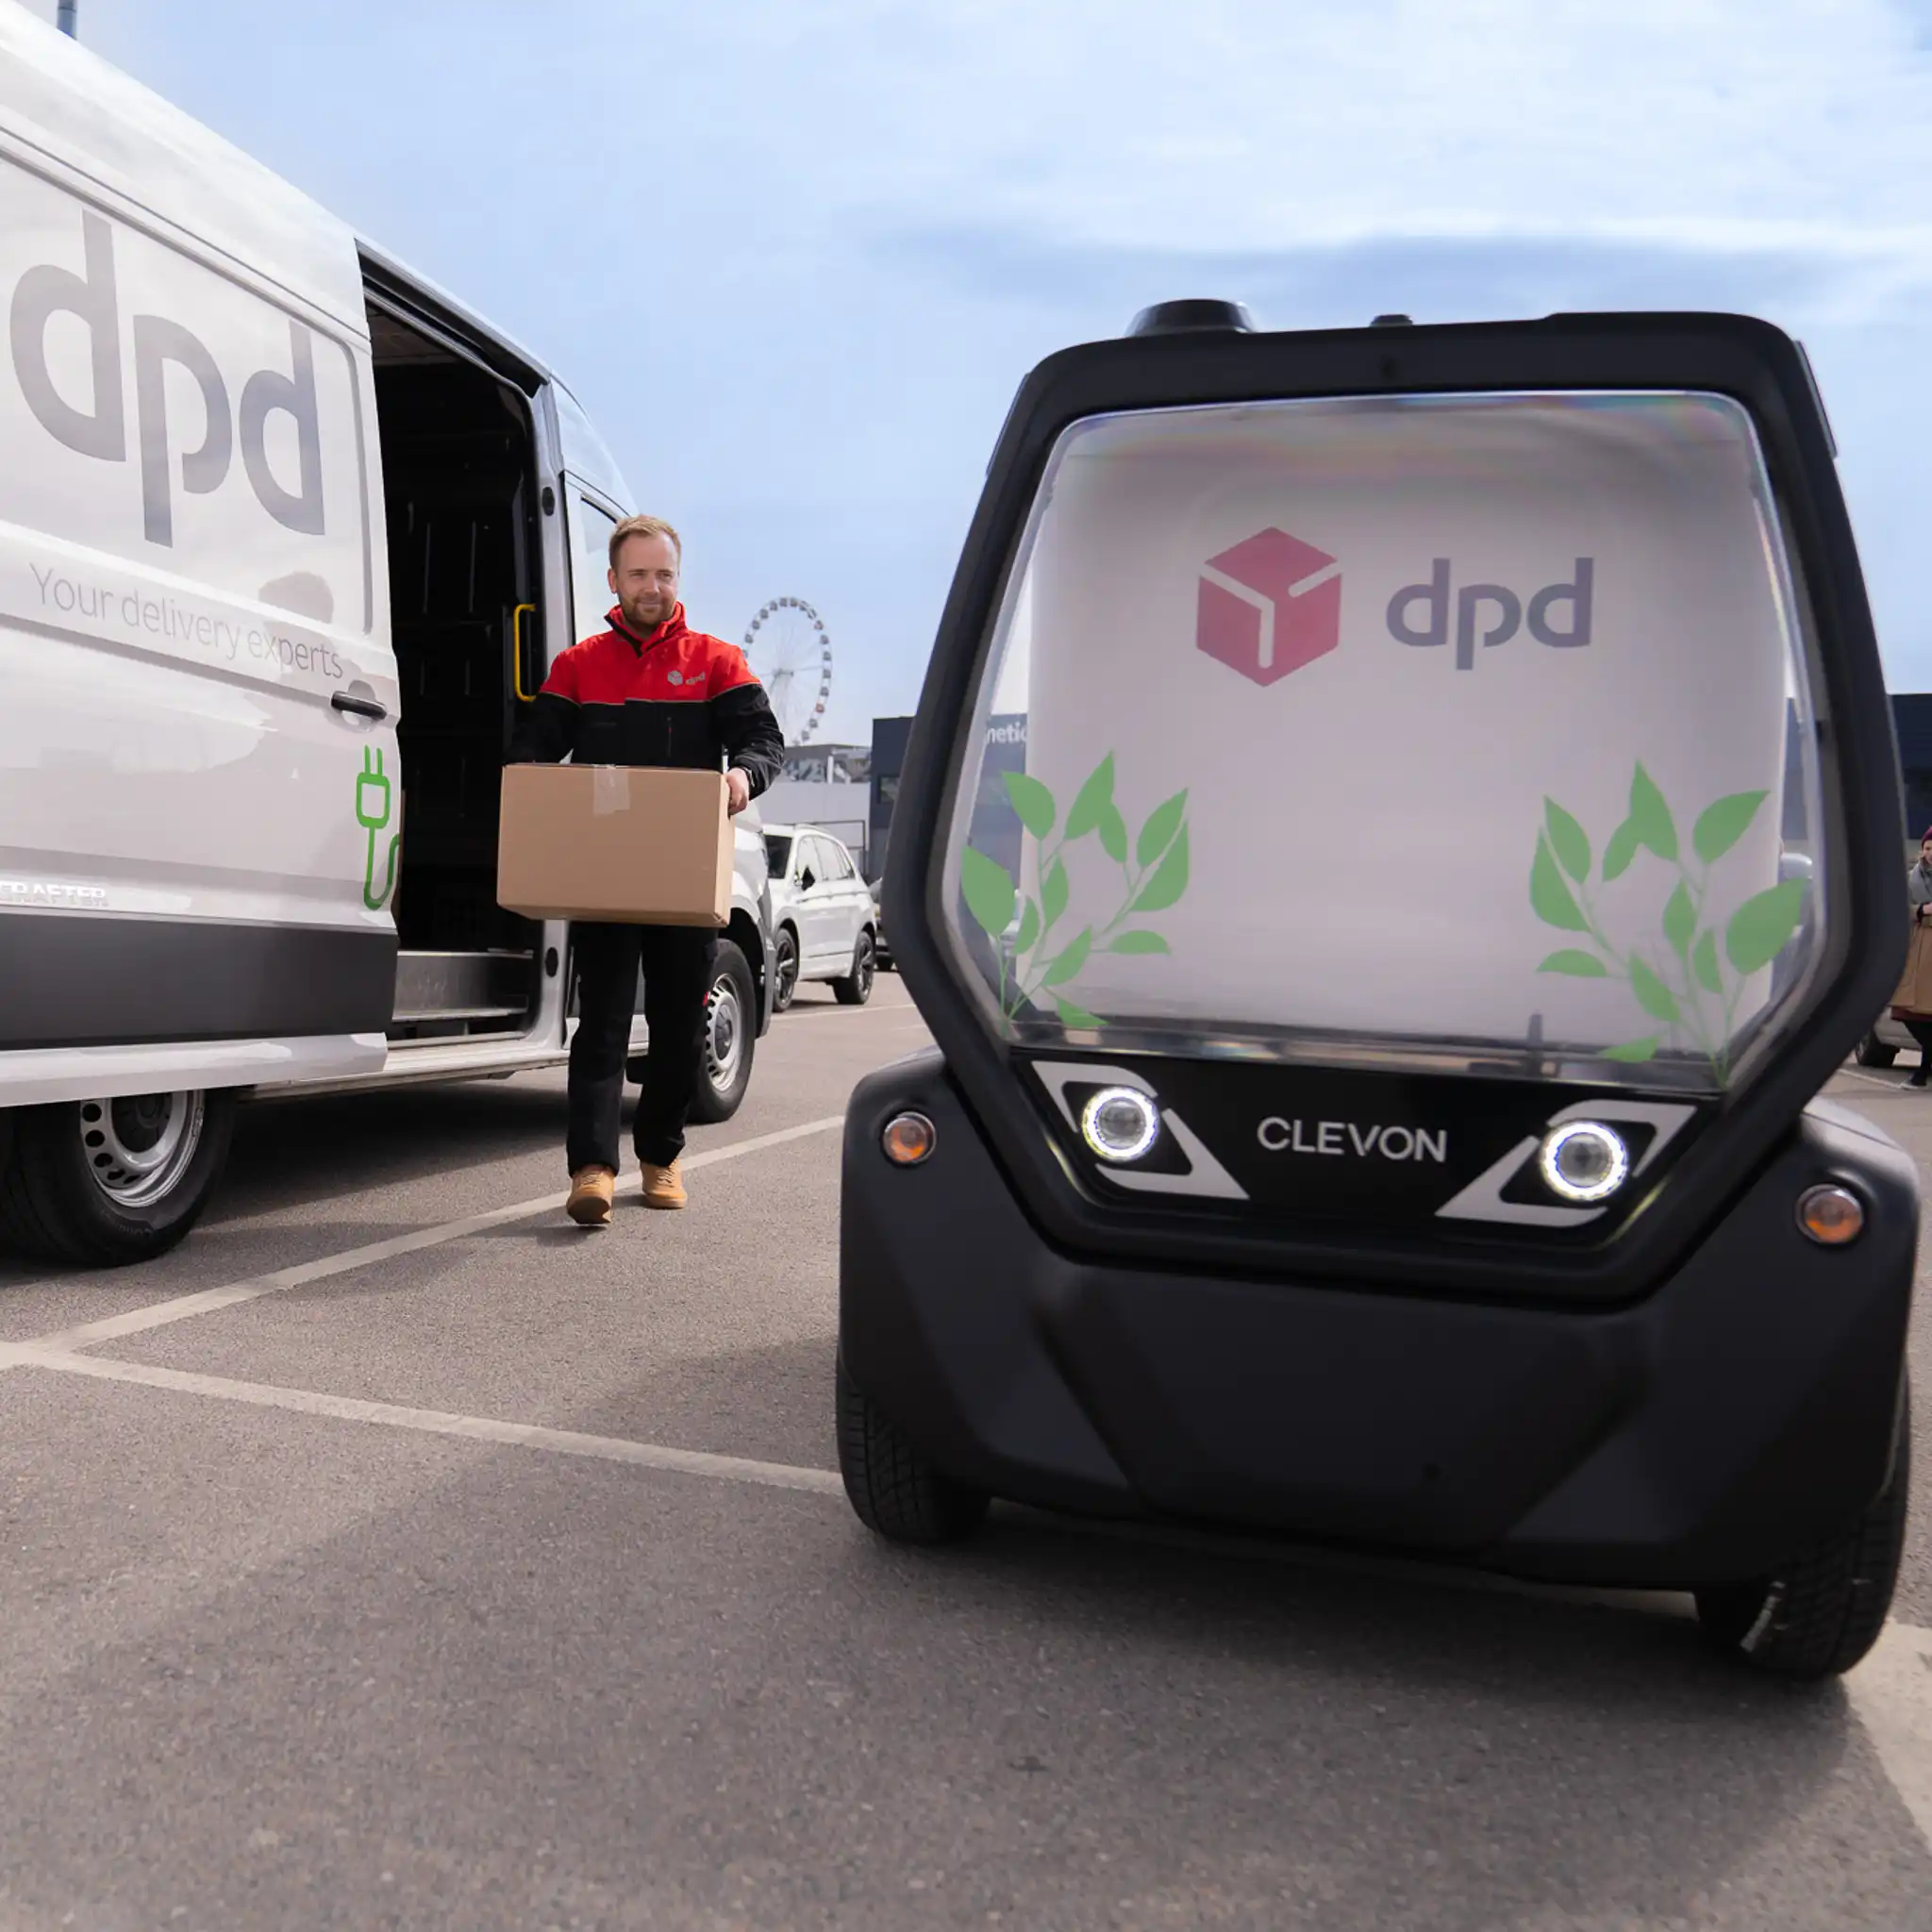 Autonomous Robot carrier CLEVON 1 delivering with DPD